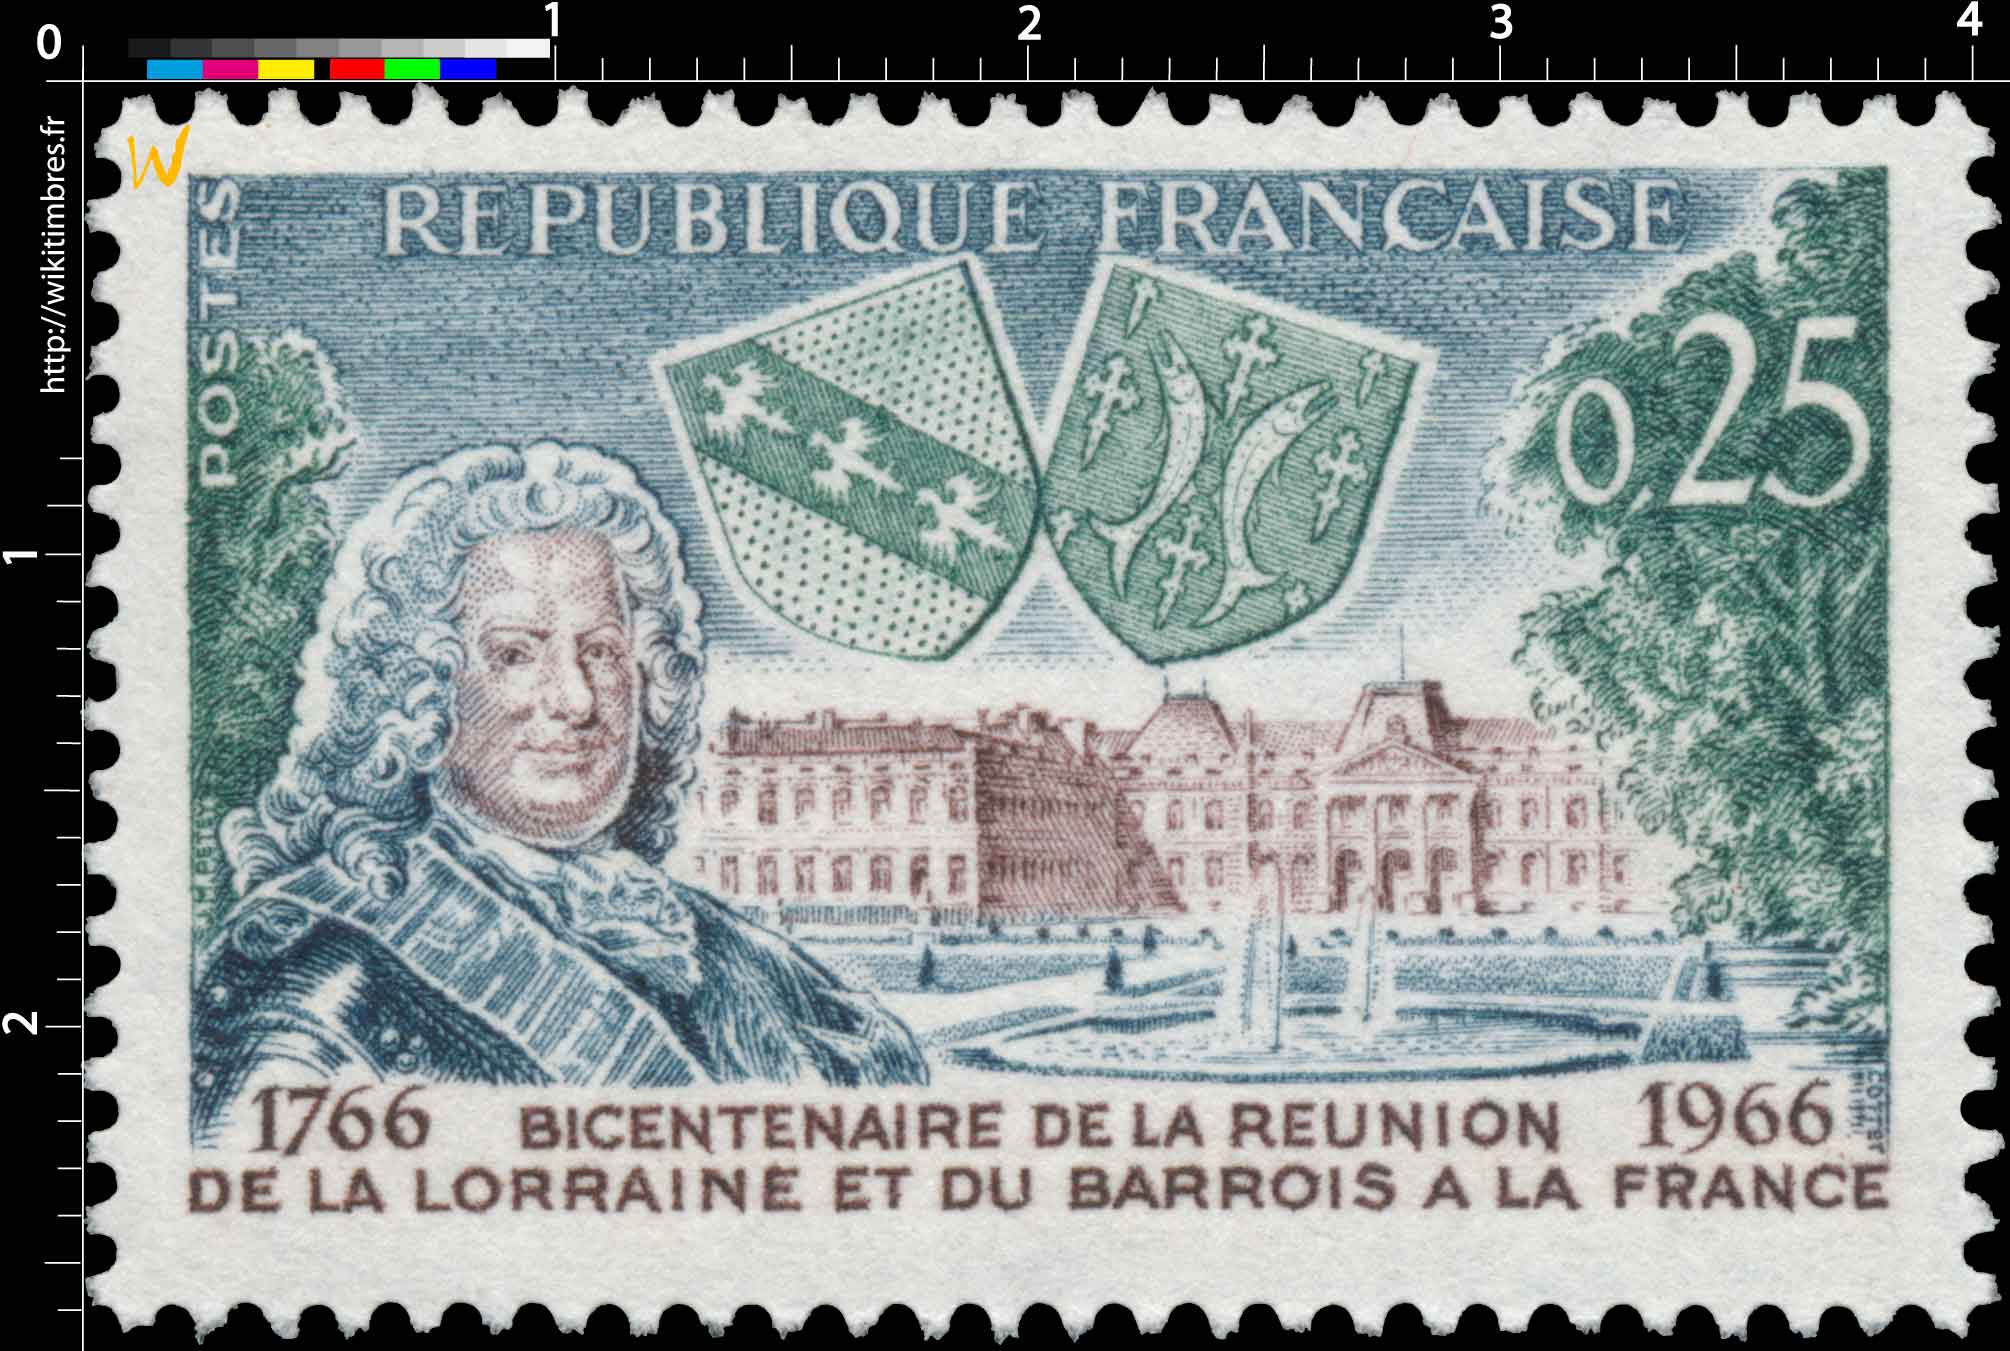 BICENTENAIRE DE LA RÉUNION DE LA LORRAINE ET DU BARROIS A LA FRANCE 1766-1966